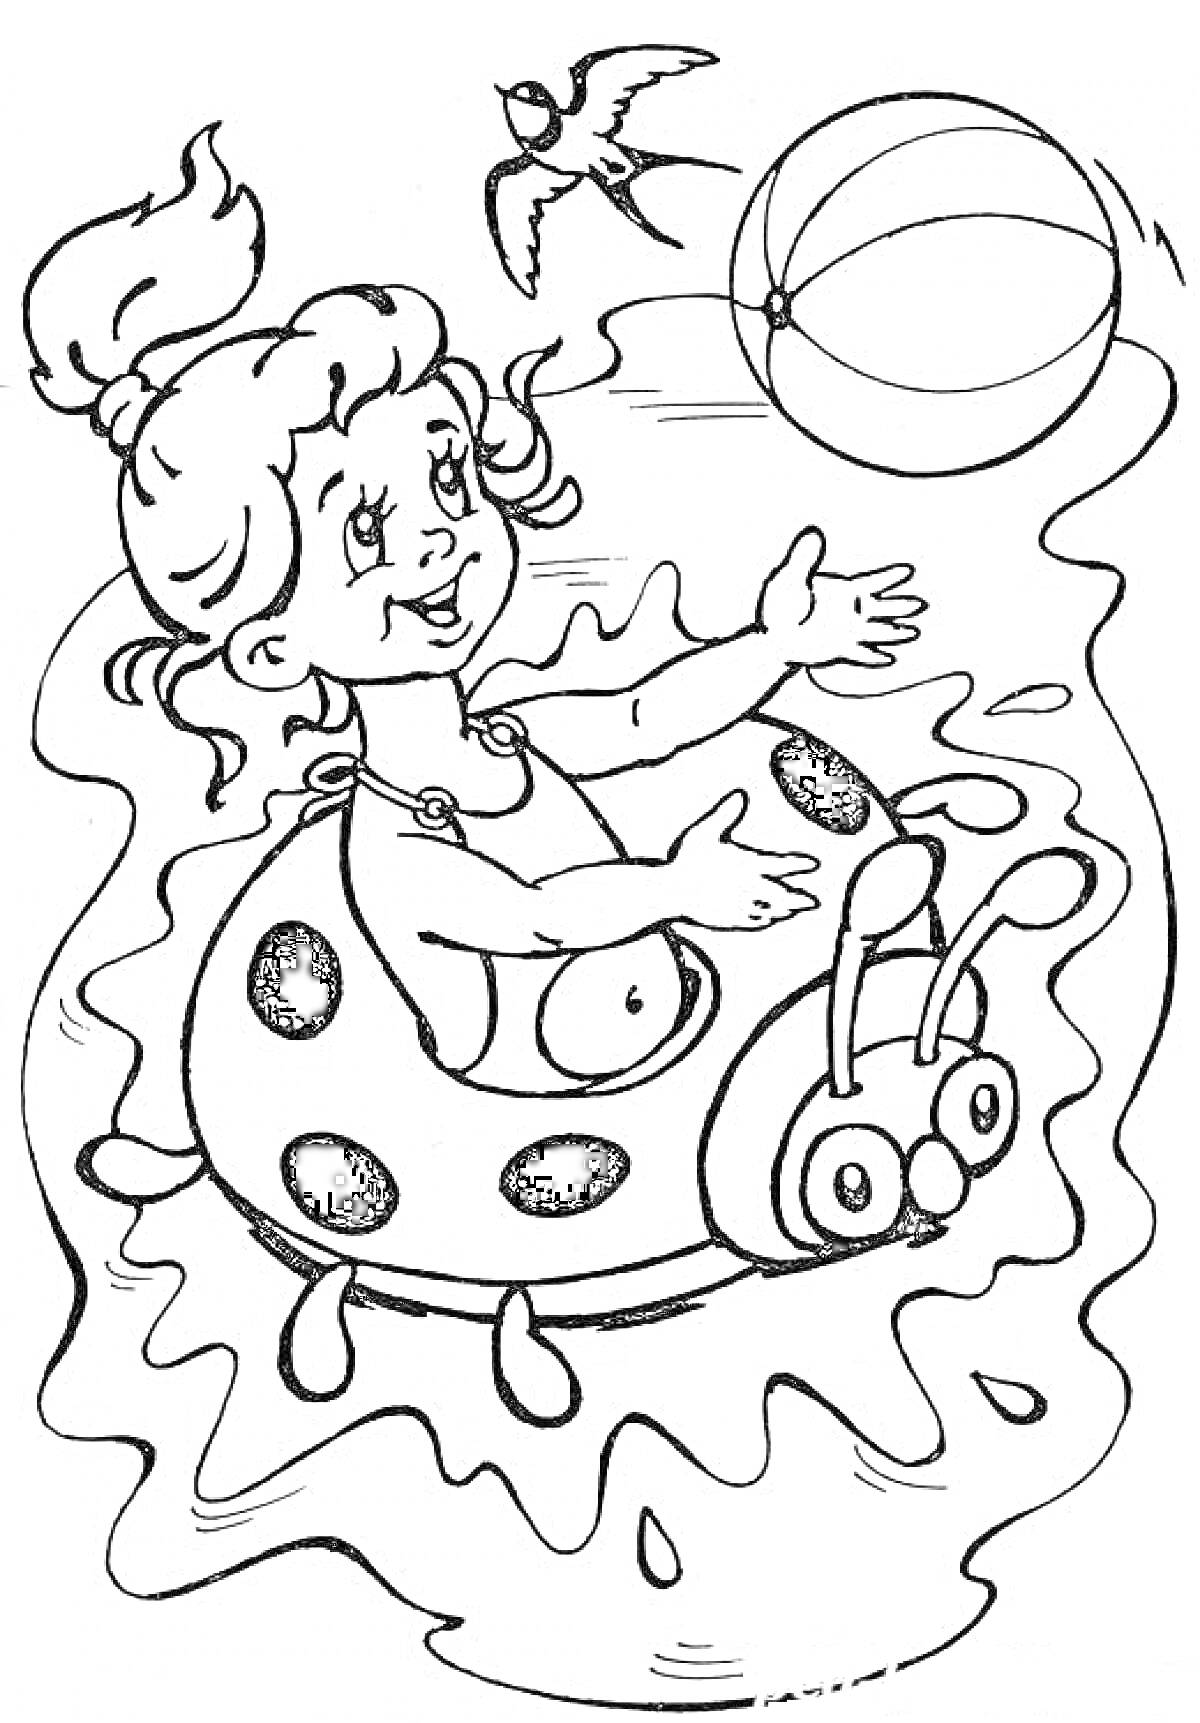 Девочка в надувном круге-божья коровка играет с мячом в воде, птица в небе